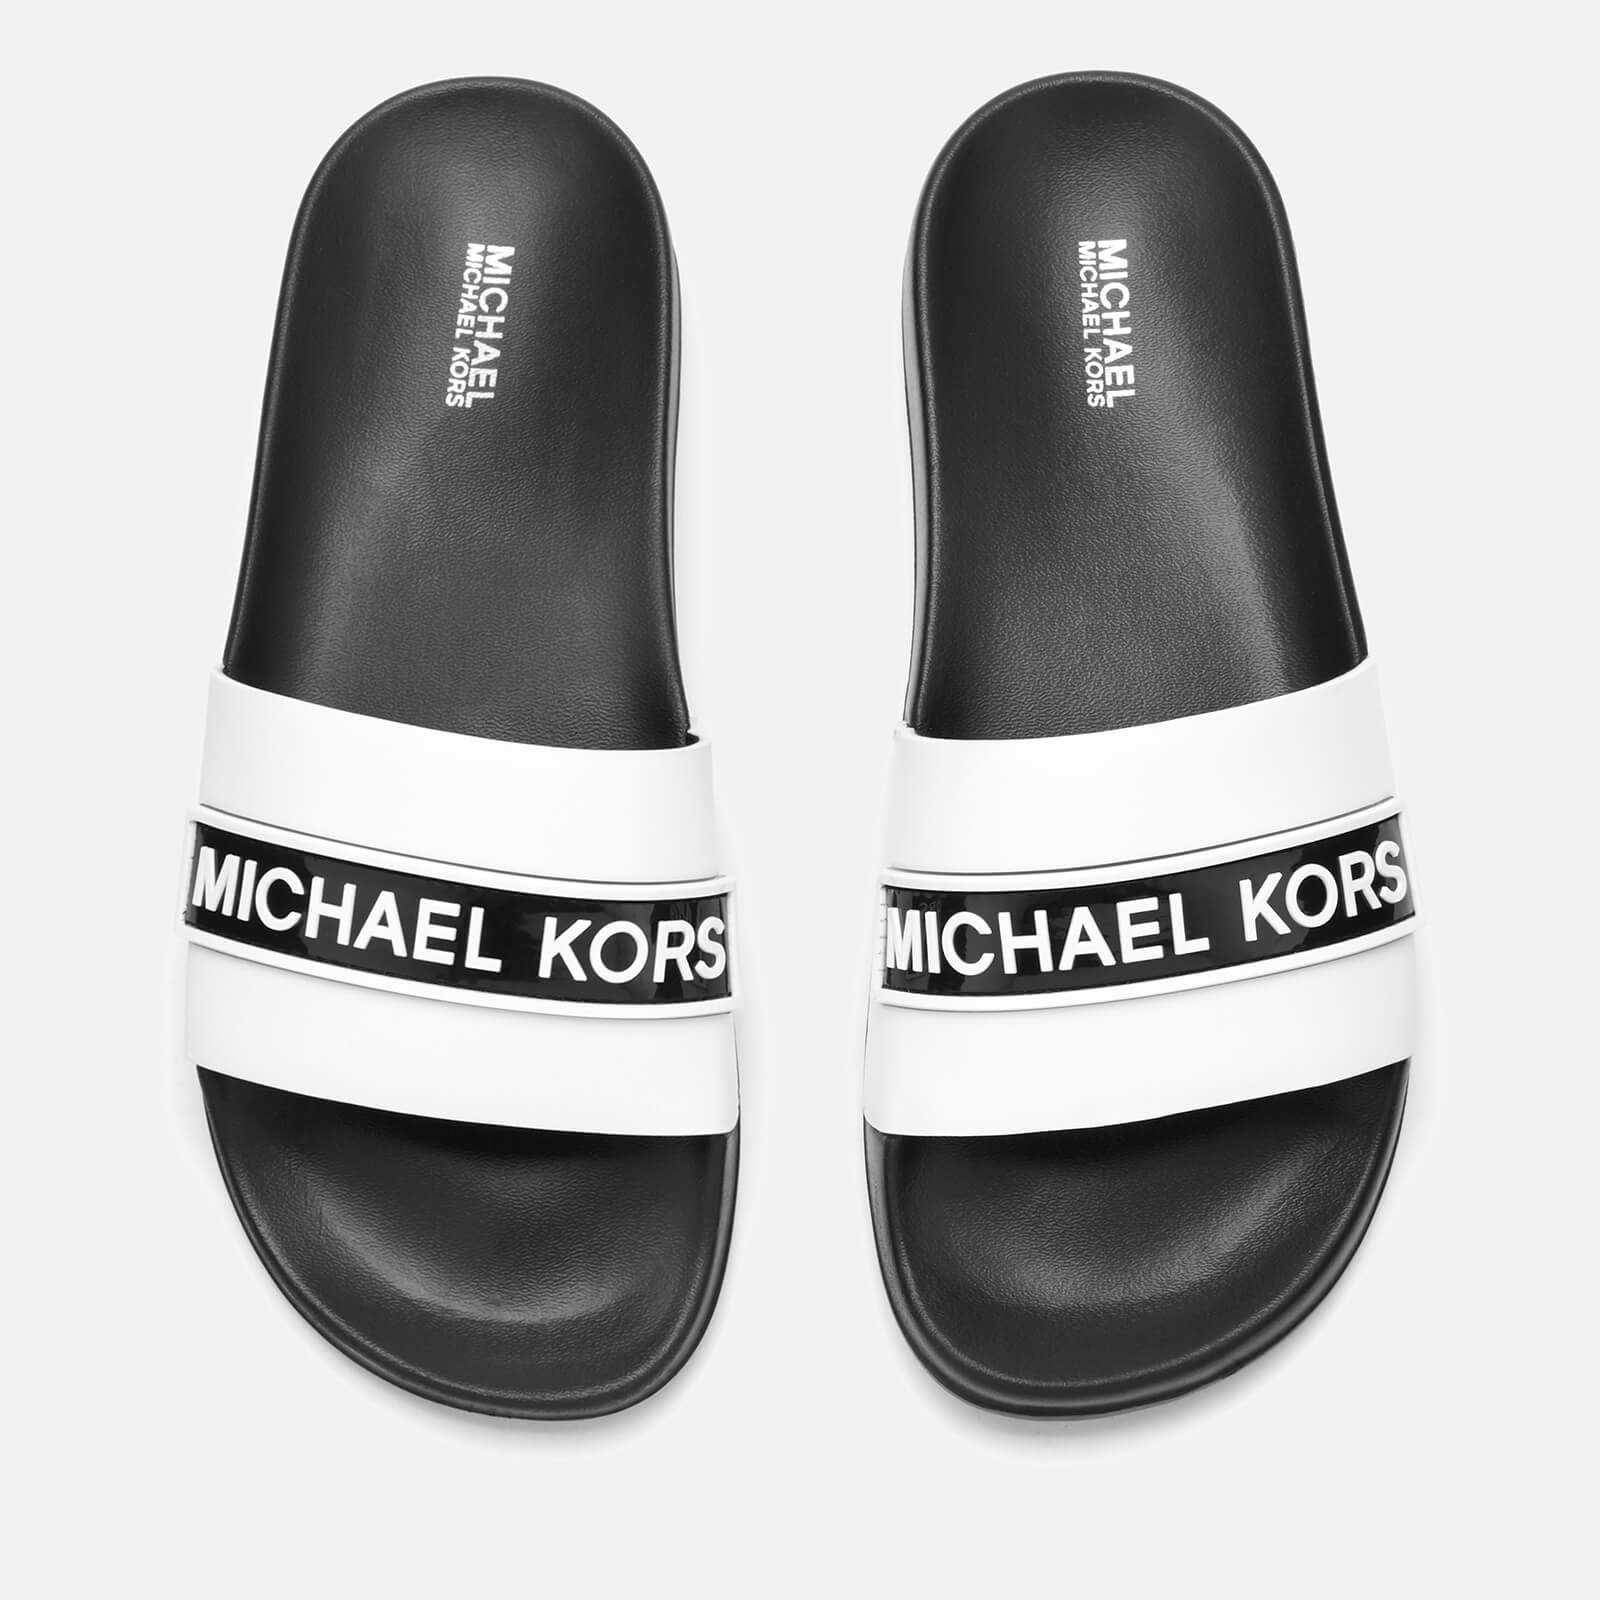 michael kors women's slide sandals